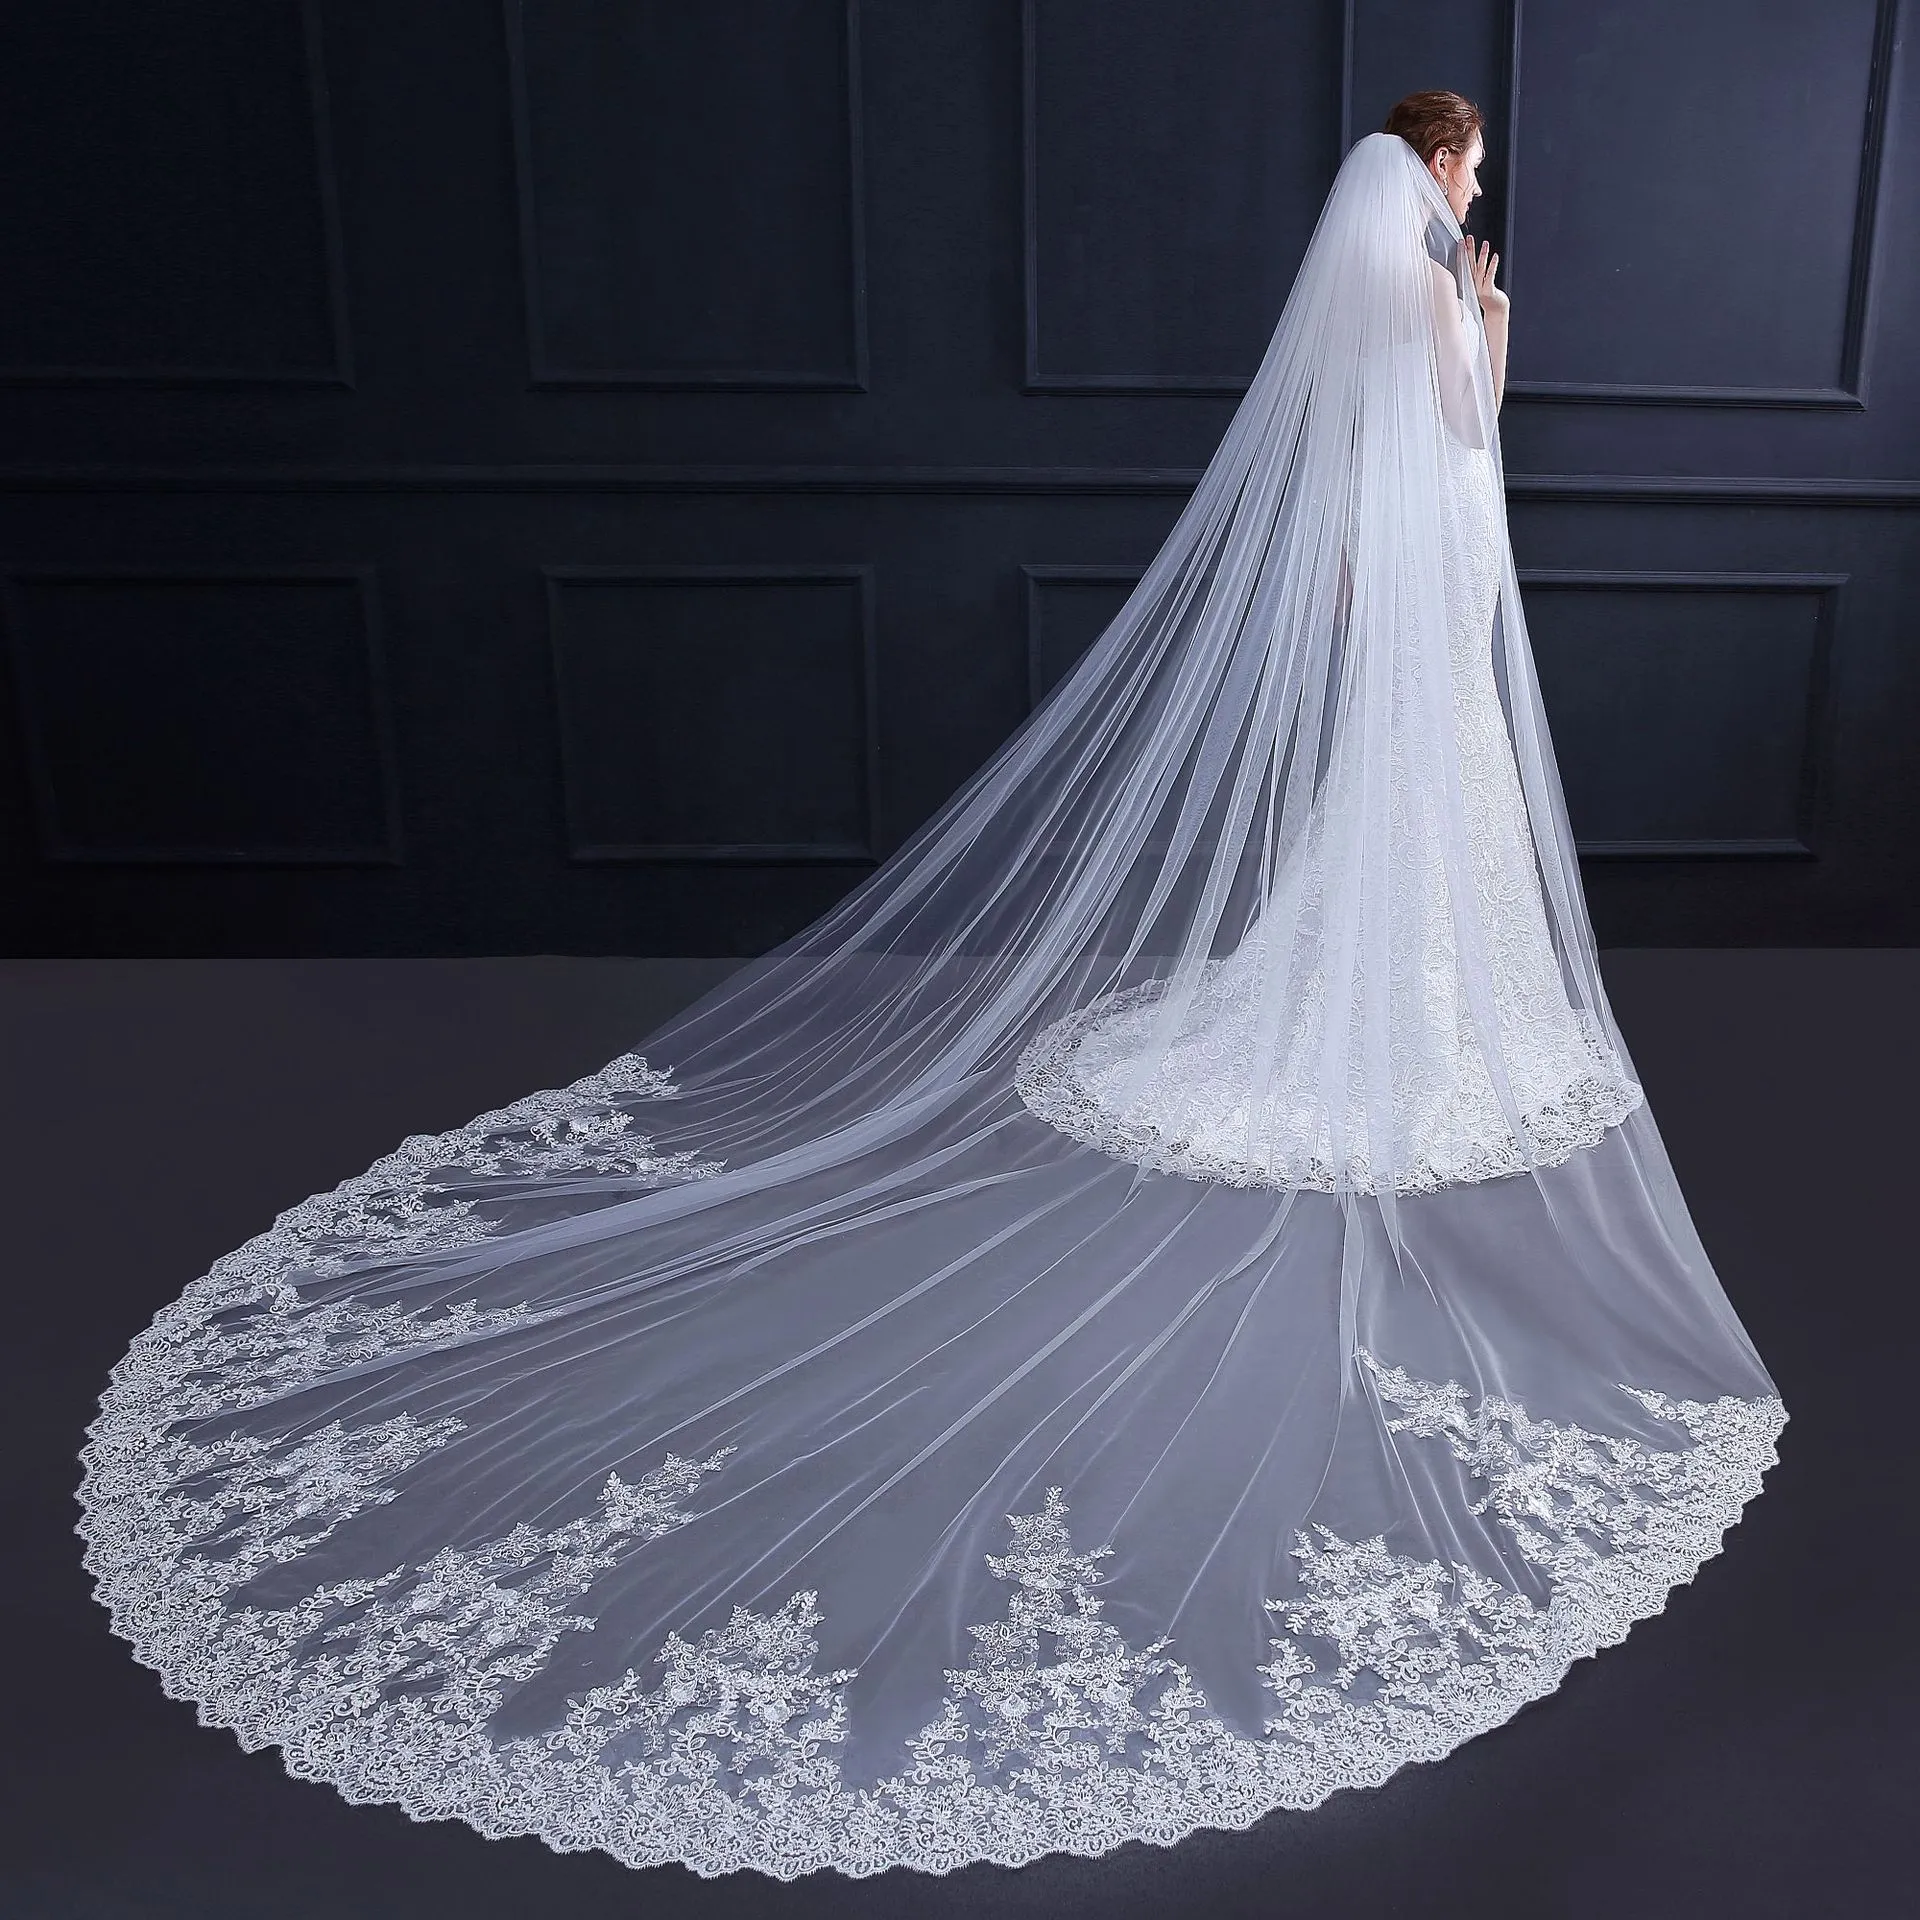 2019 طبقة واحدة العاج 3.5 متر الزفاف breal الحجاب الدانتيل زين كاتدرائية طويل الزفاف الحجاب للكرة ثوب الزفاف فساتين